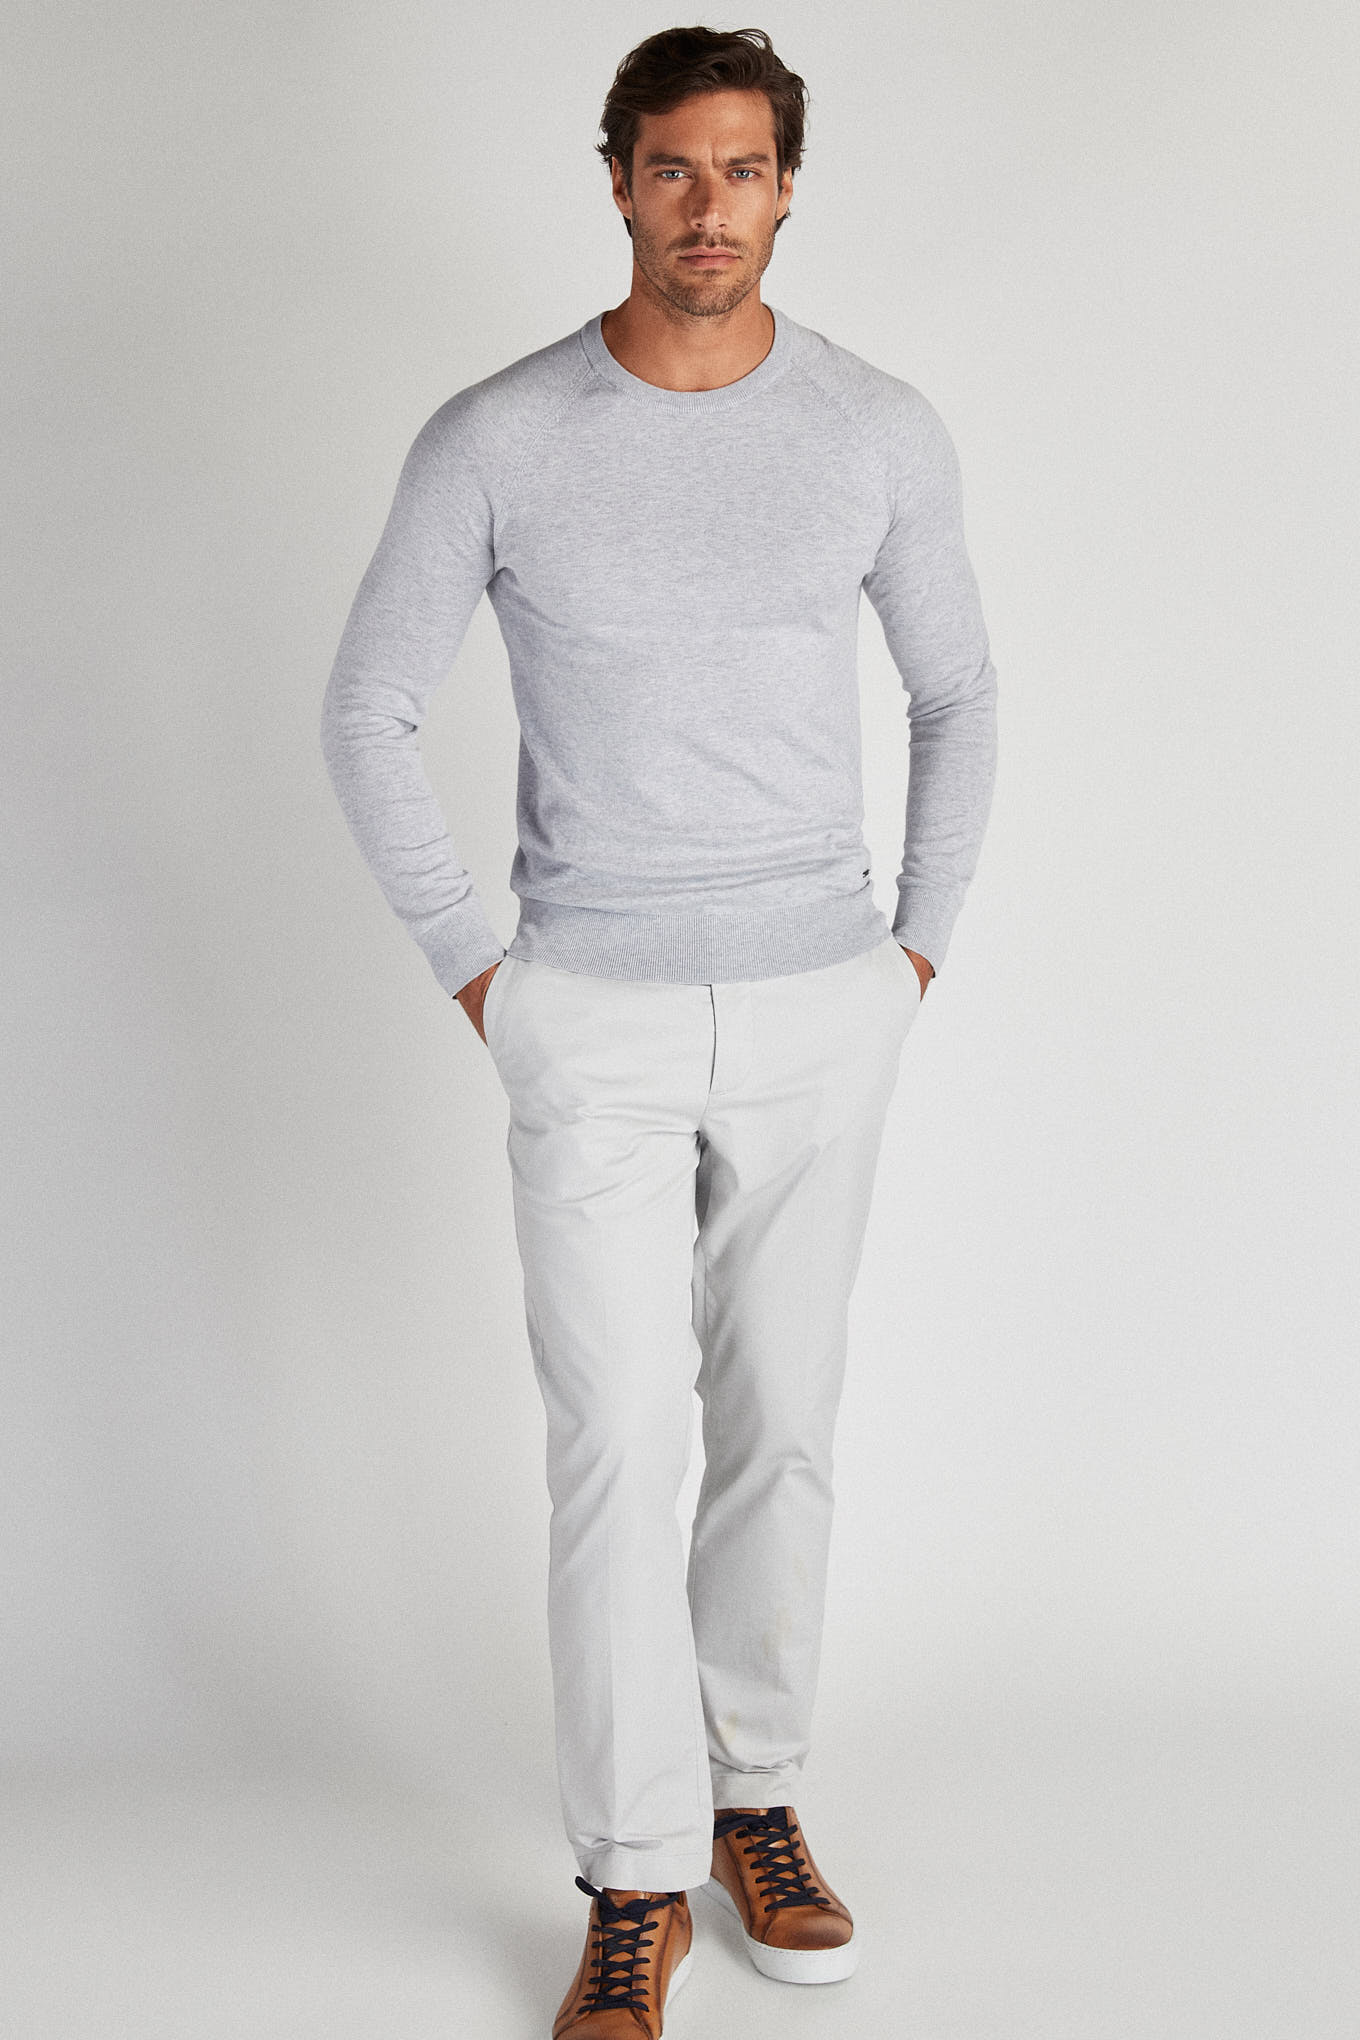 Sweater Medium Grey Casual Man